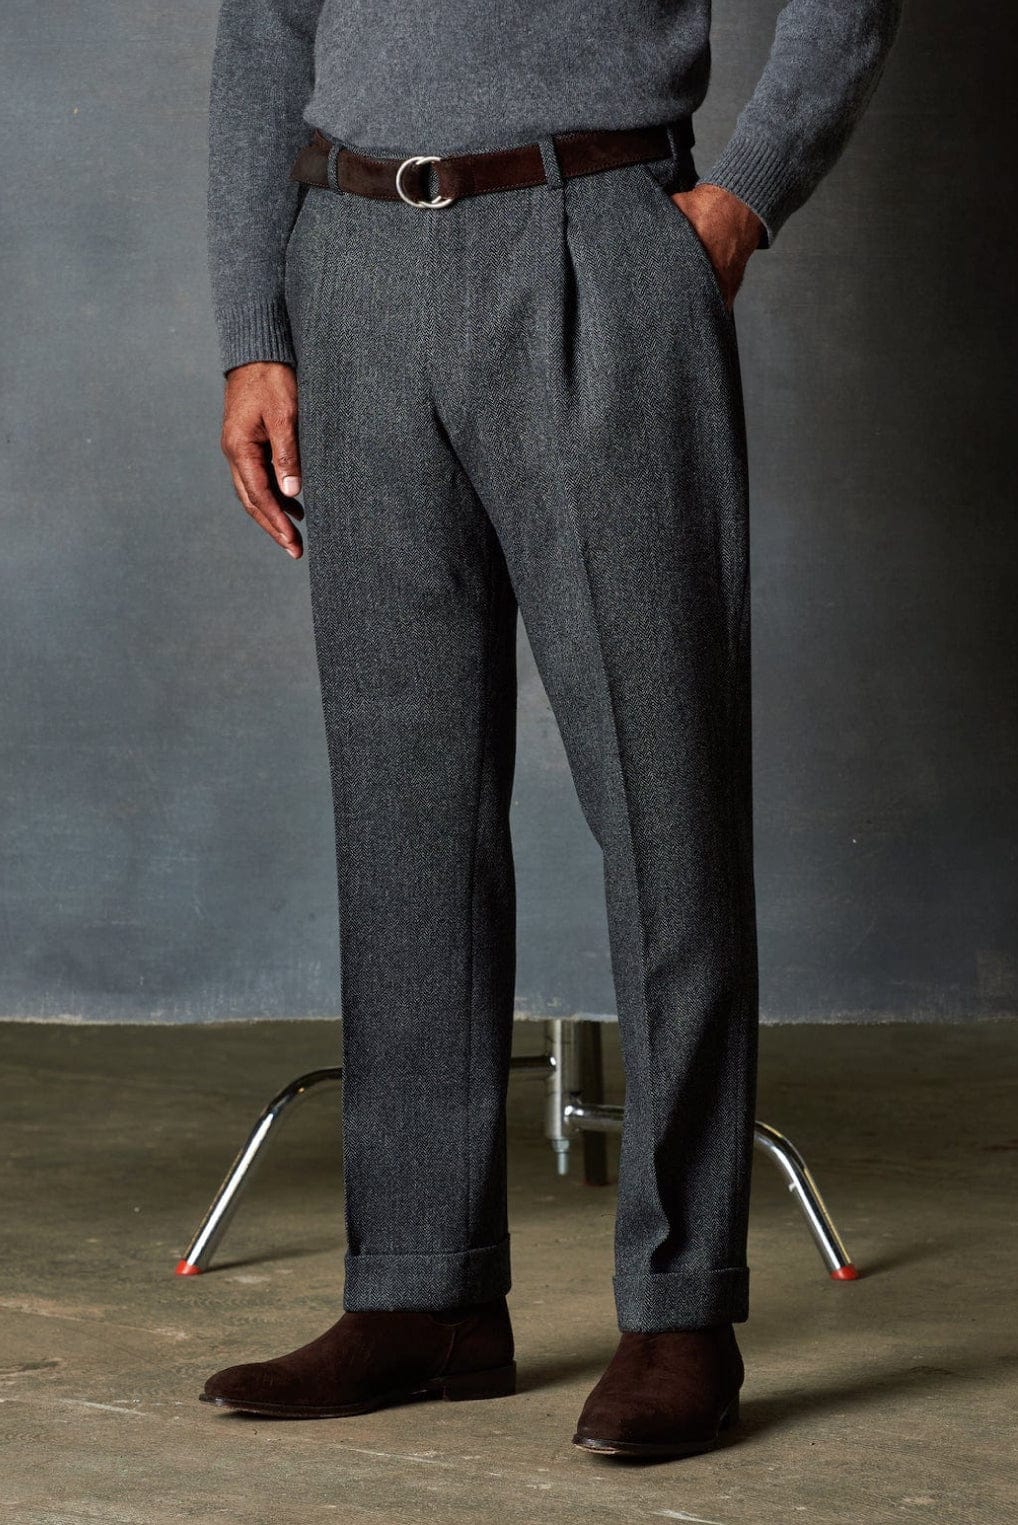 Charcoal Grey Smarts - Custom-Fit Men's Italian Wool Trousers - SPOKE -  SPOKE